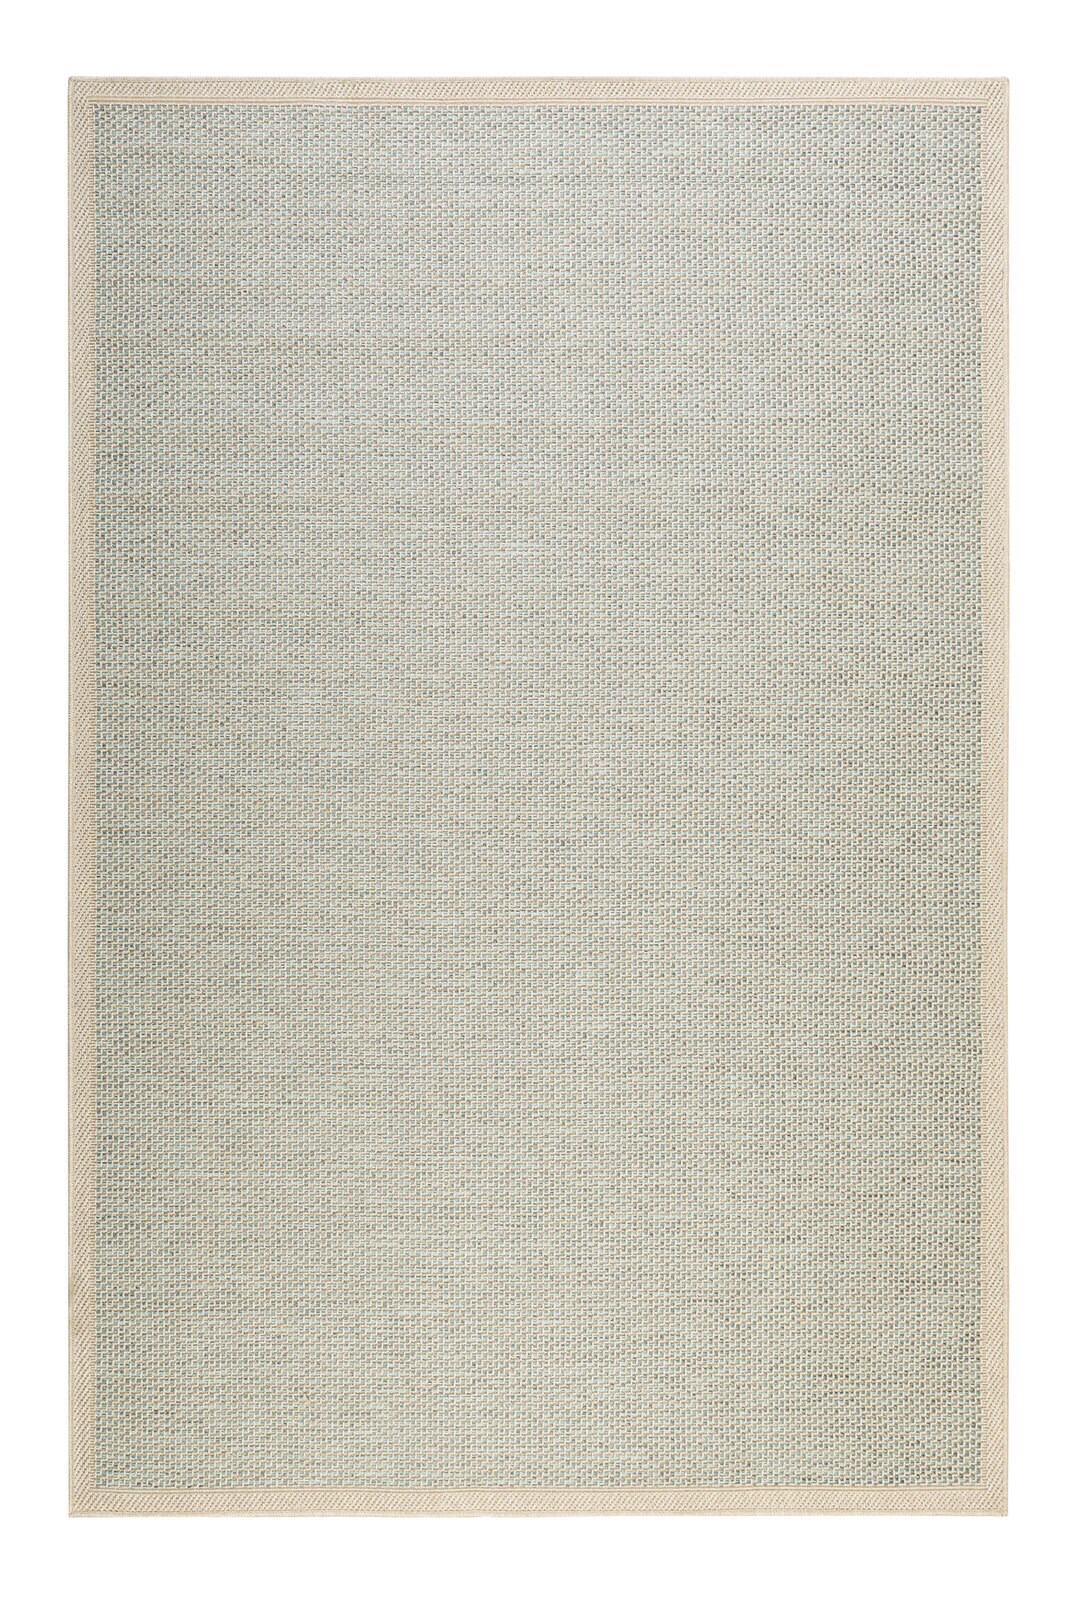 ESPRIT Outdoorteppich MIDLAND 160 x 225 cm beige/türkis